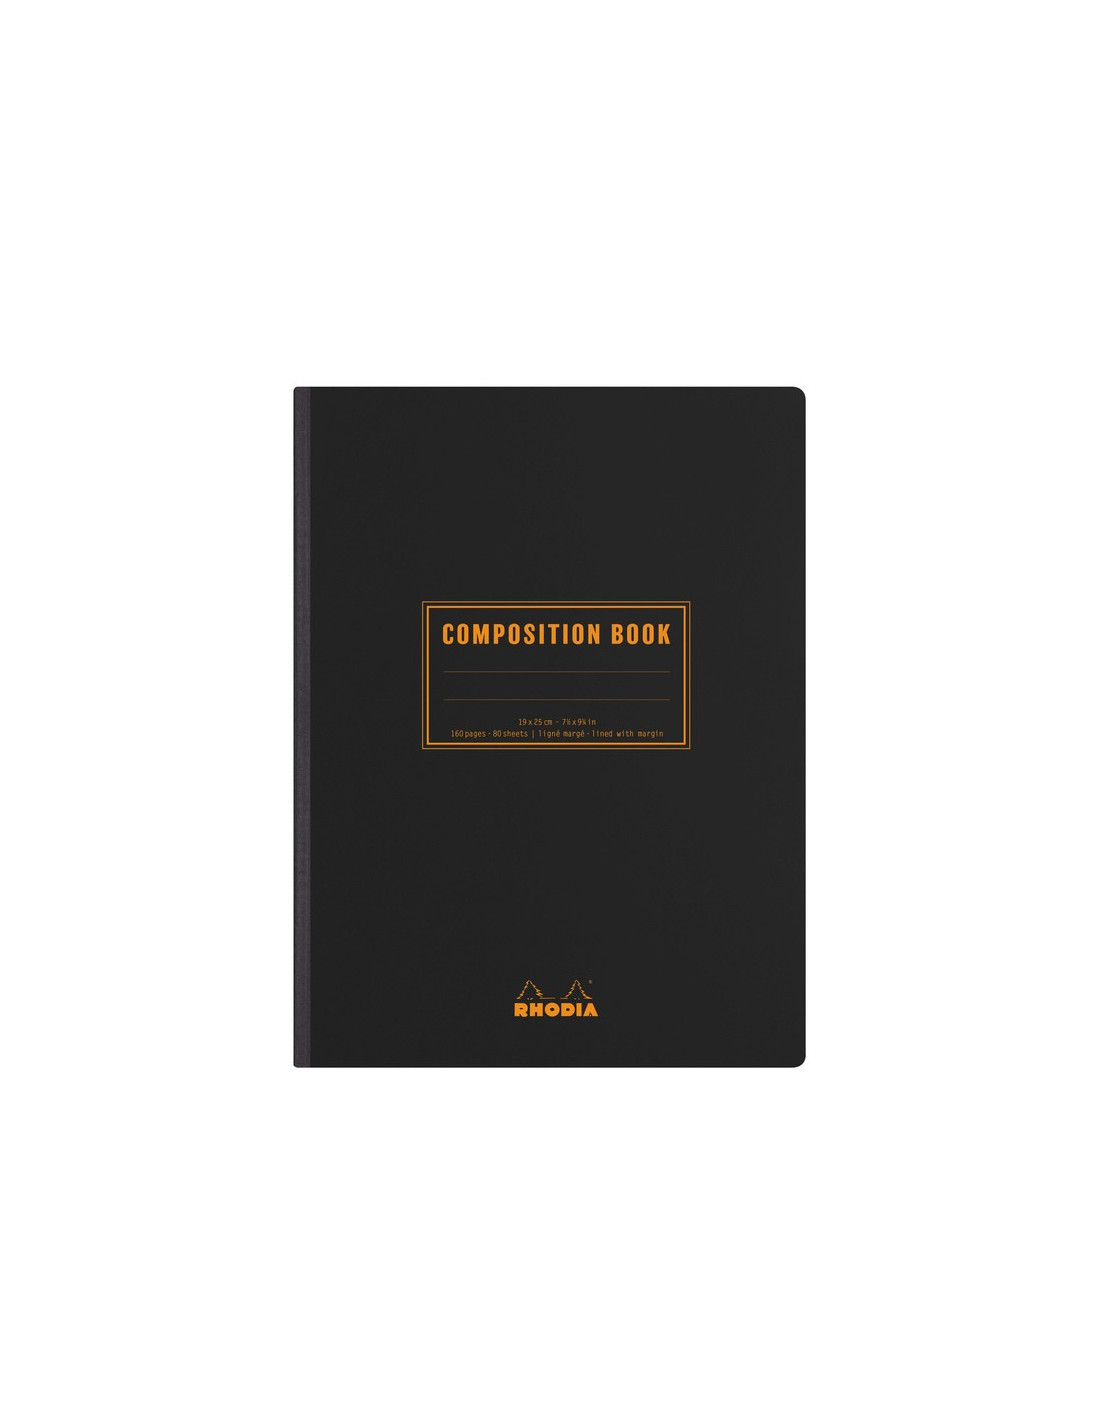 Carnet Composition Book B5 ligné - Noir - Rhodia